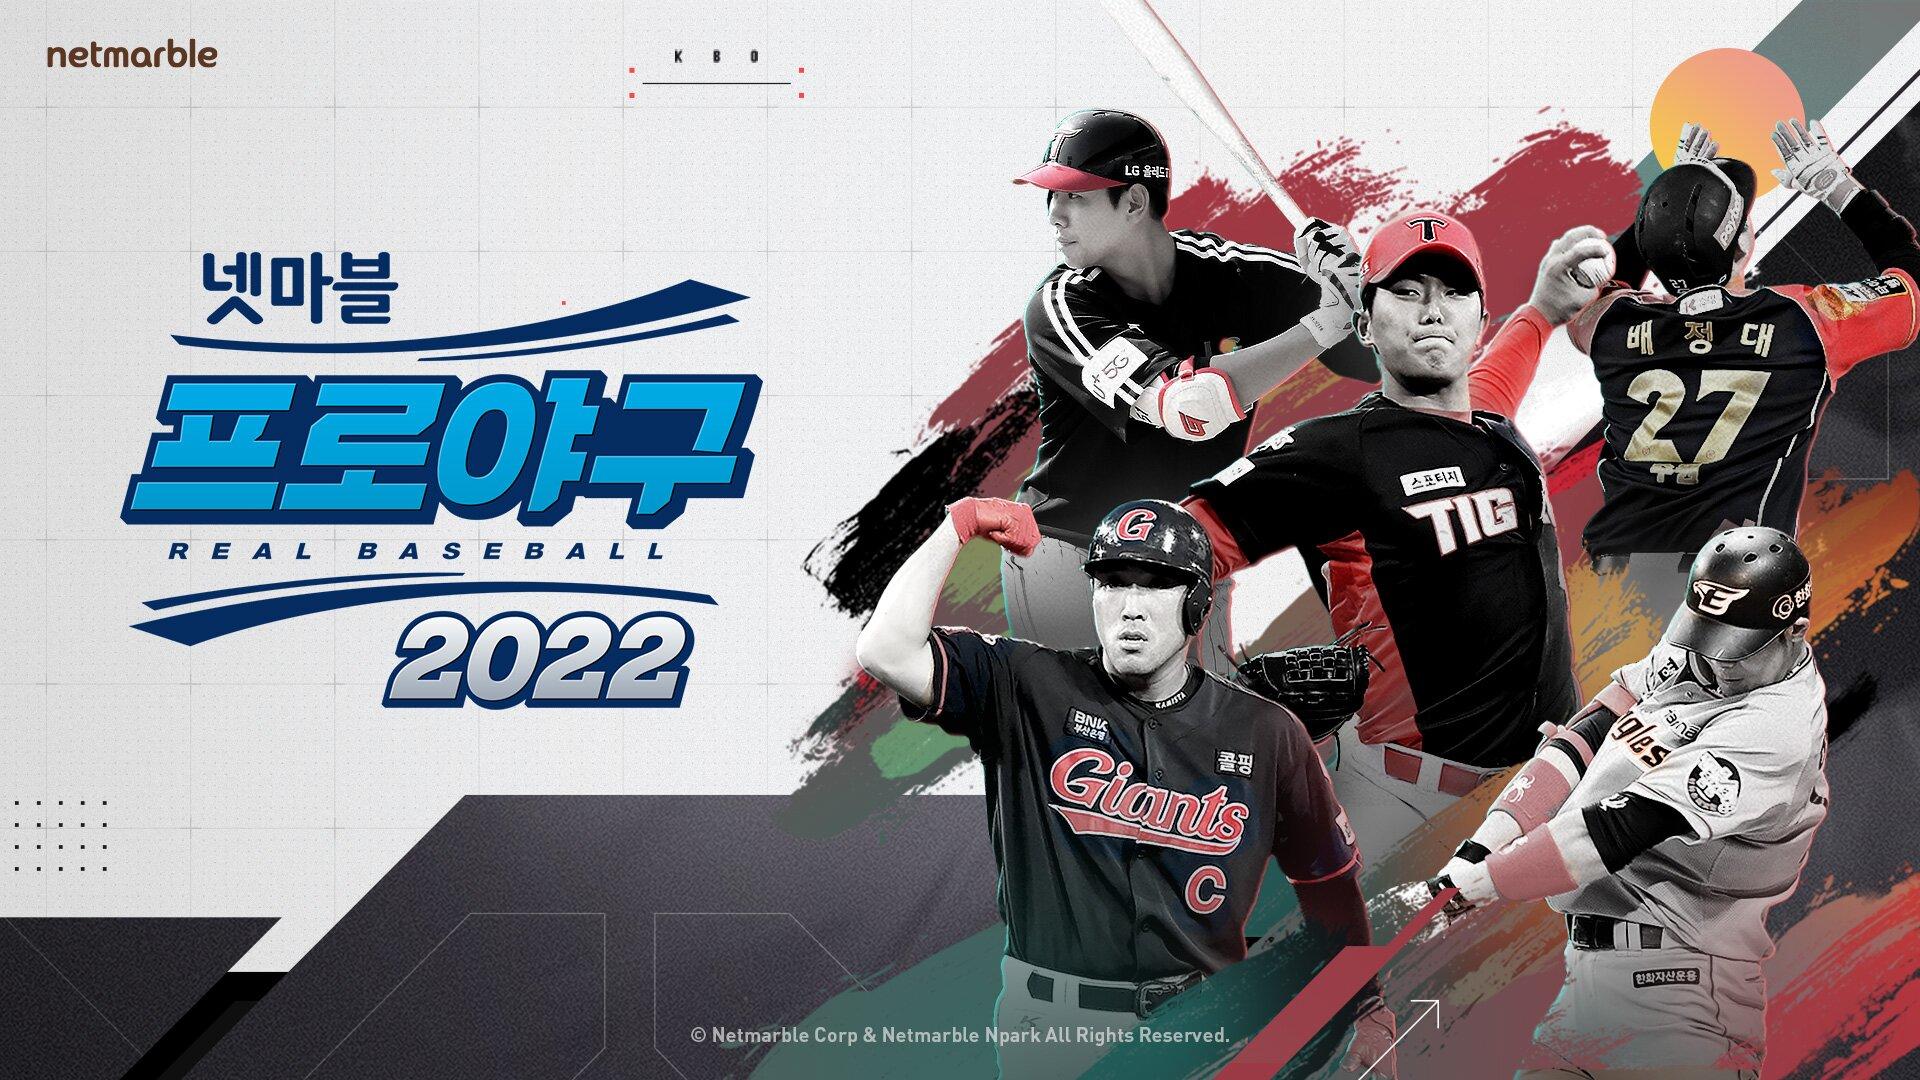 Banner of Vrai base-ball 2022 